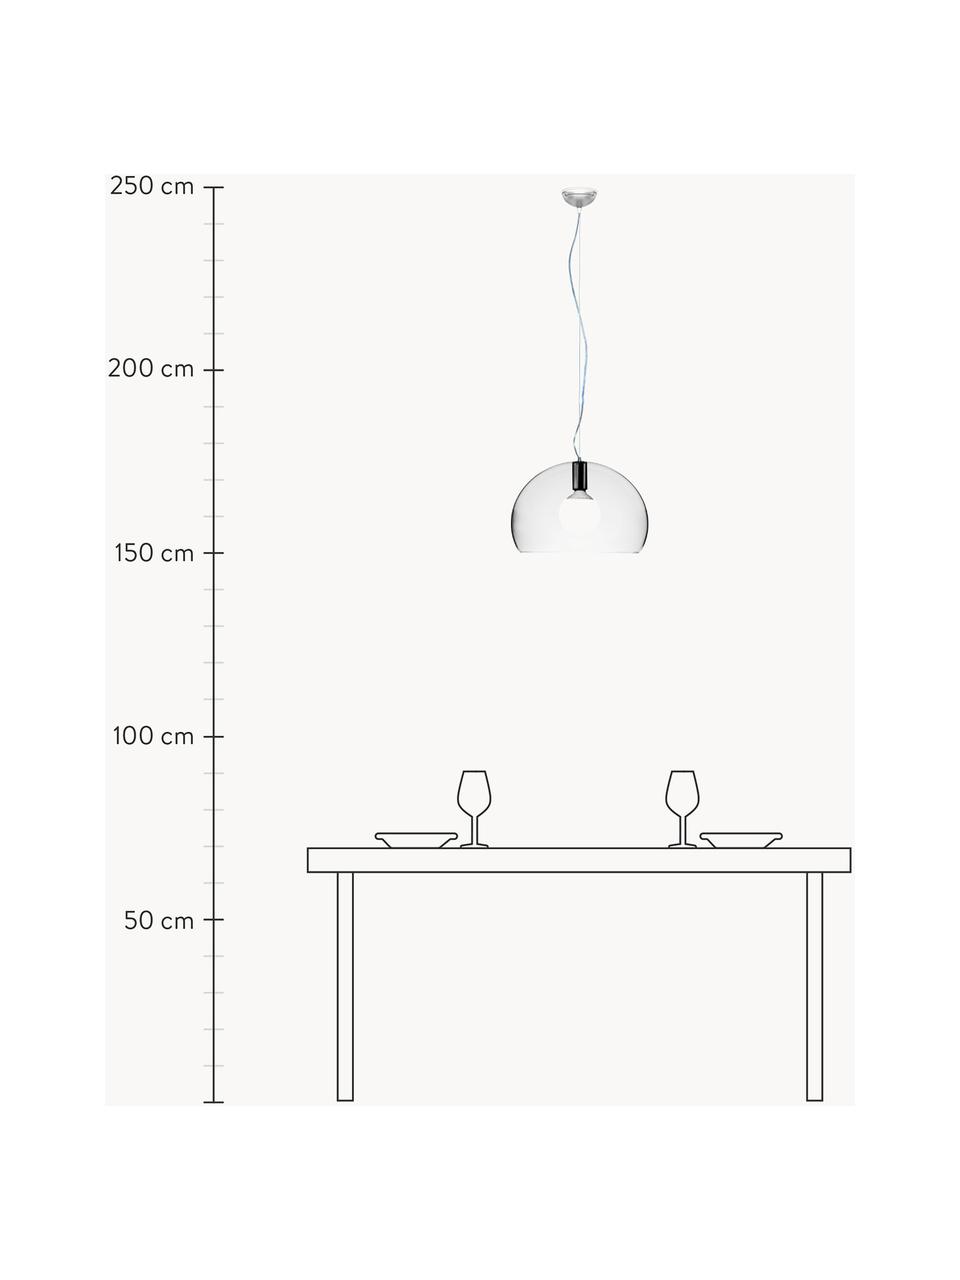 Lámpara de techo Small FL/Y, Pantalla: plástico, Cable: plástico, Transparente, Ø 38 x Al 28 cm